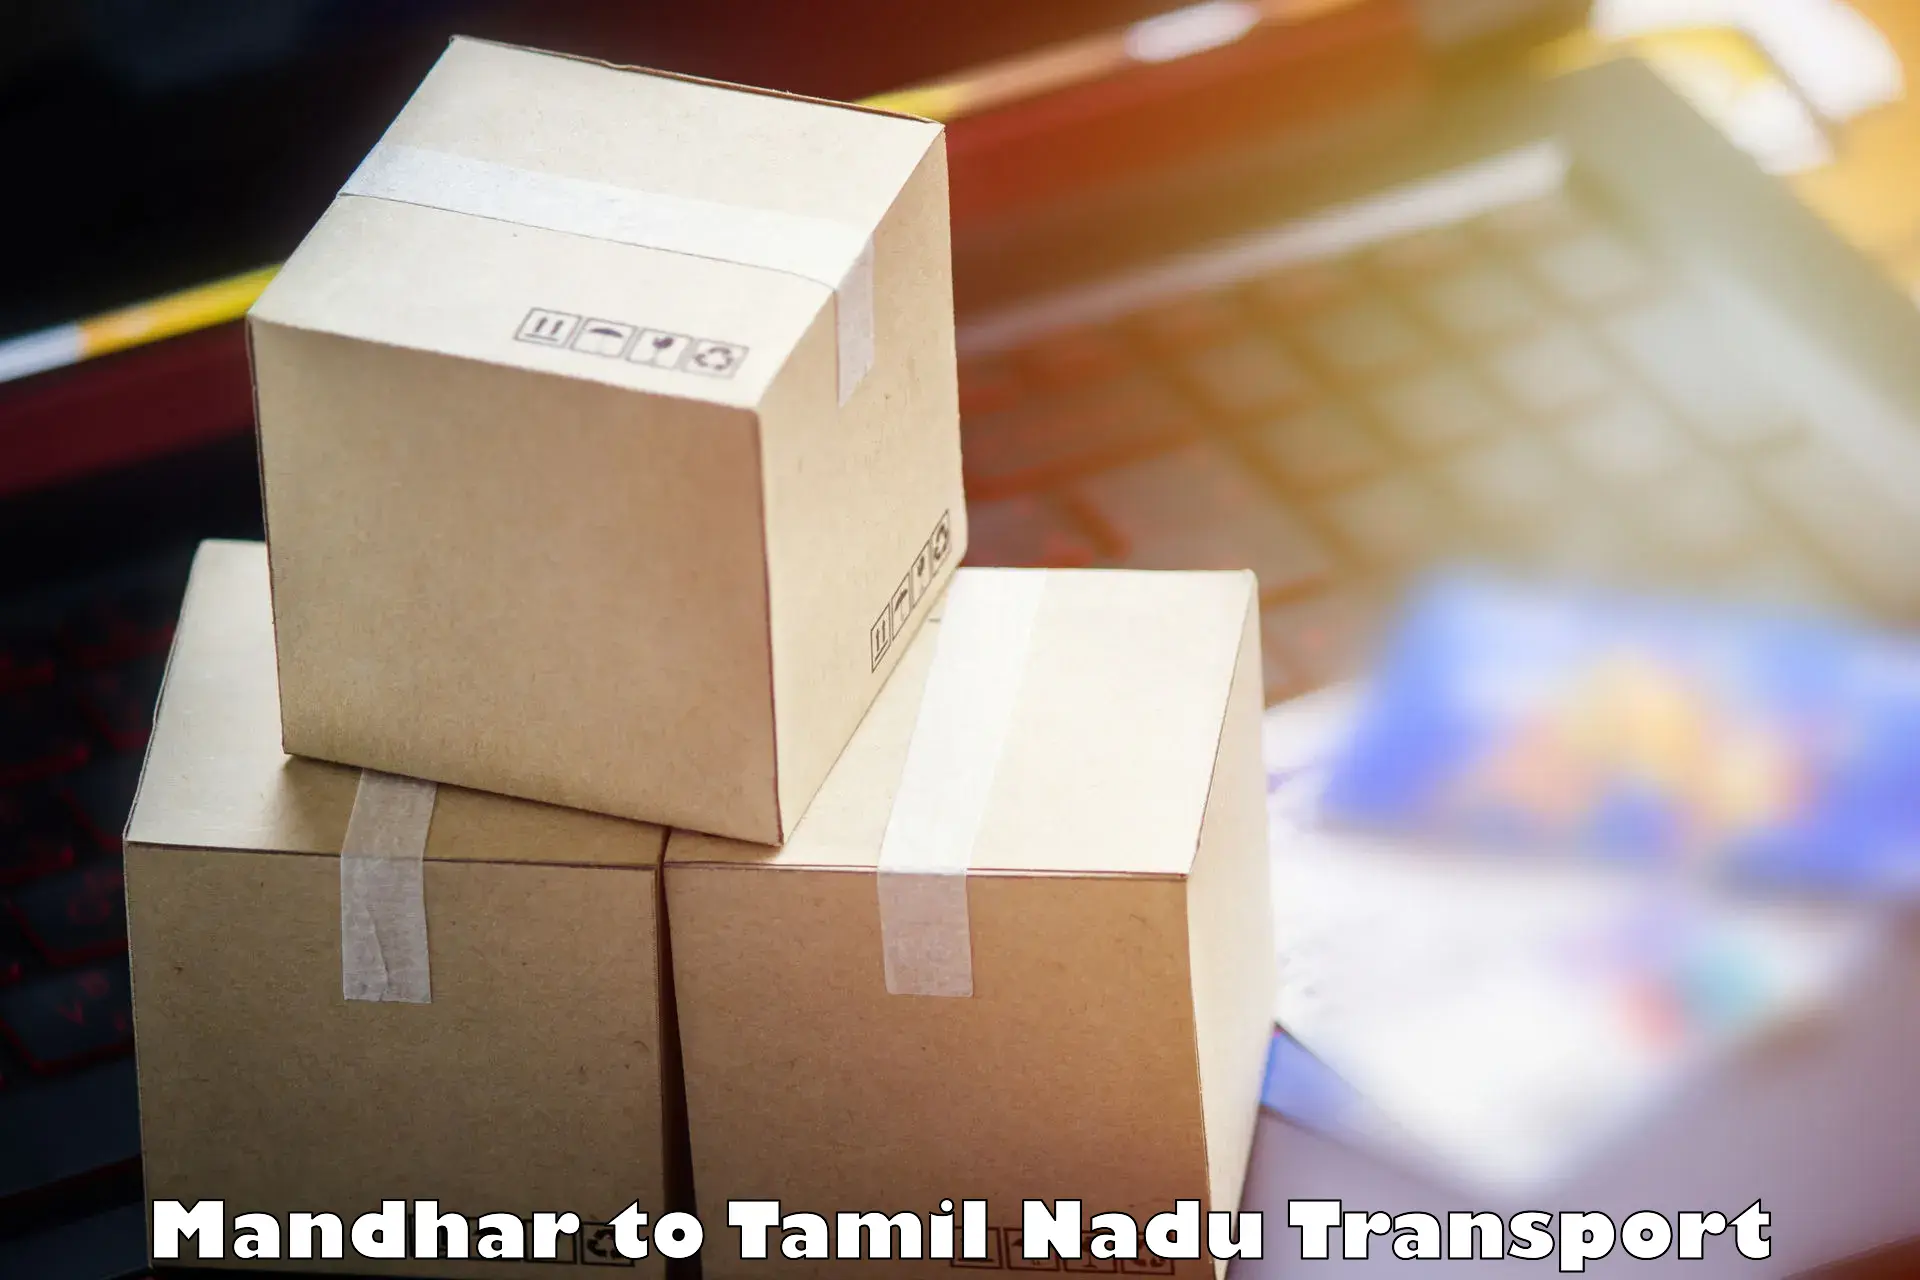 Shipping partner Mandhar to Thiruvadanai